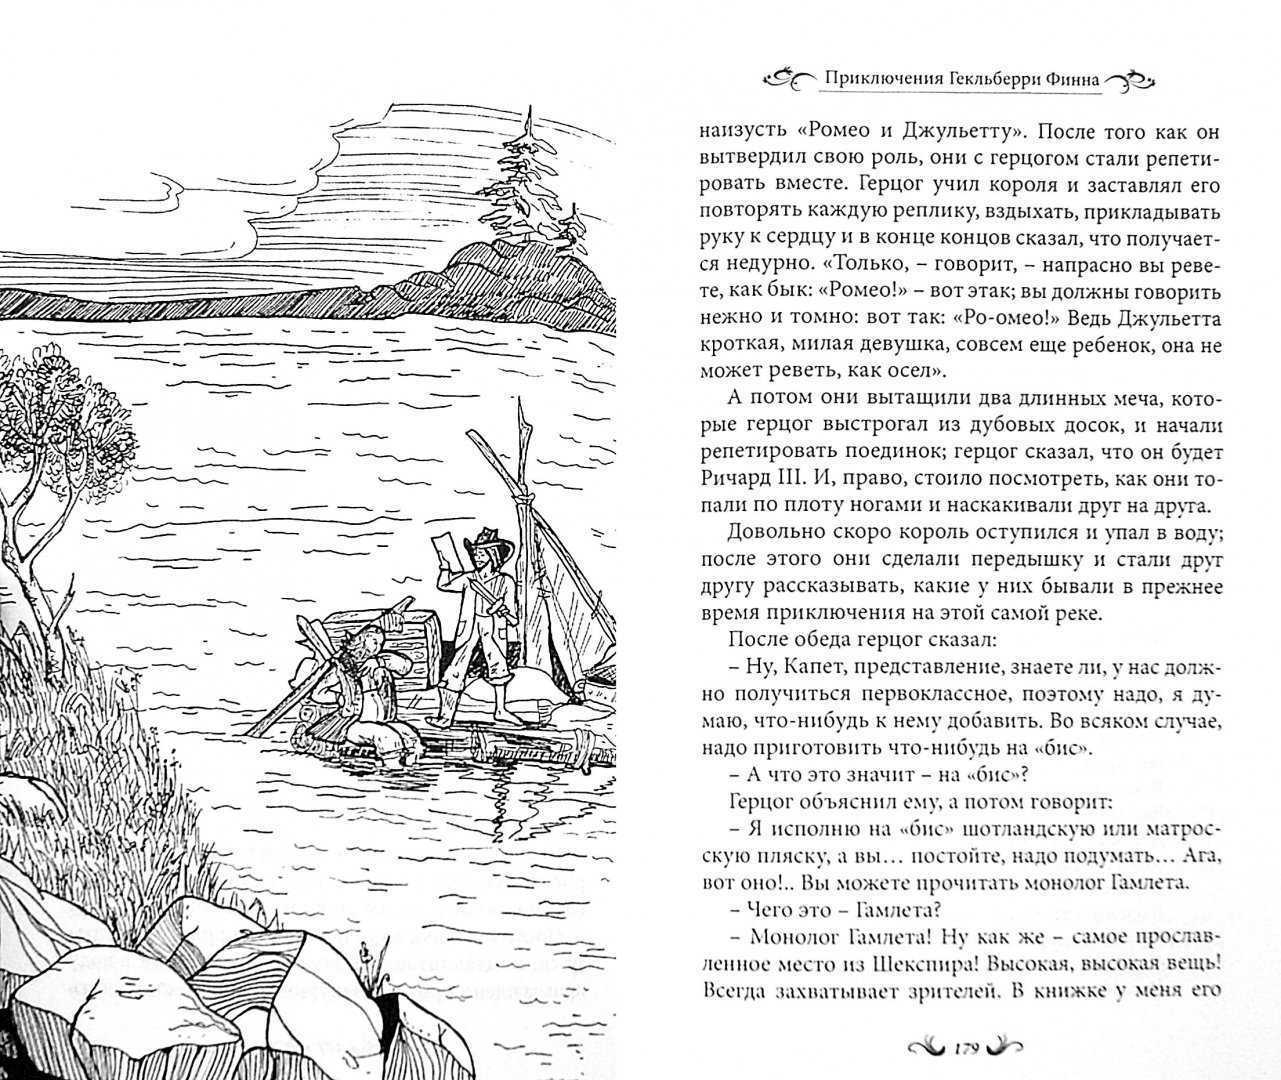 Краткое содержание по главам приключения тома. Приключения Гекльберри Финна иллюстрации к книге.